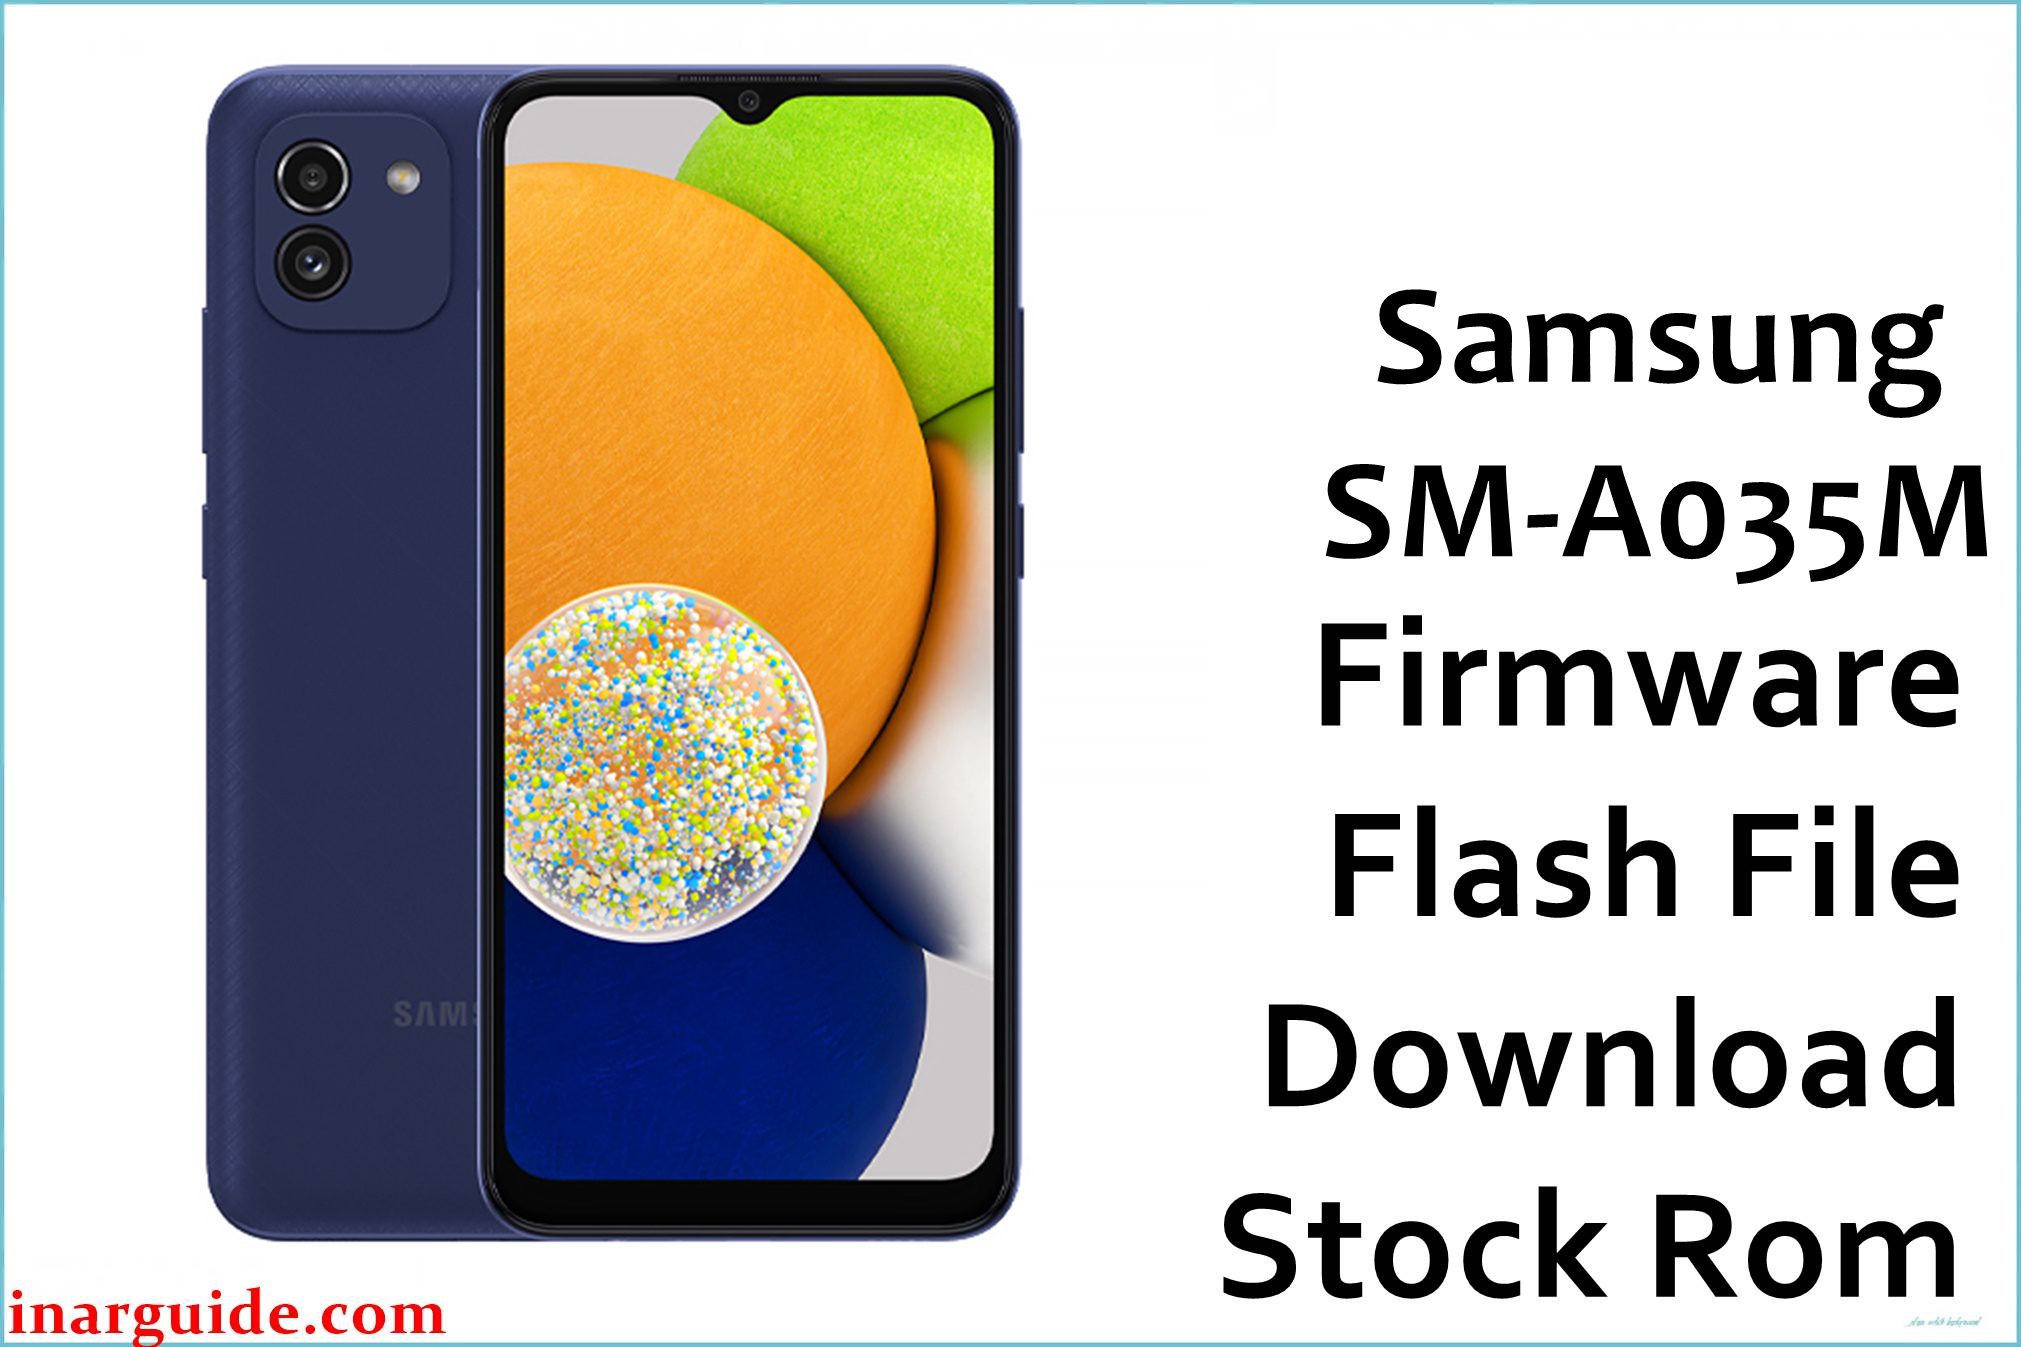 Samsung Galaxy A03 SM-A035M